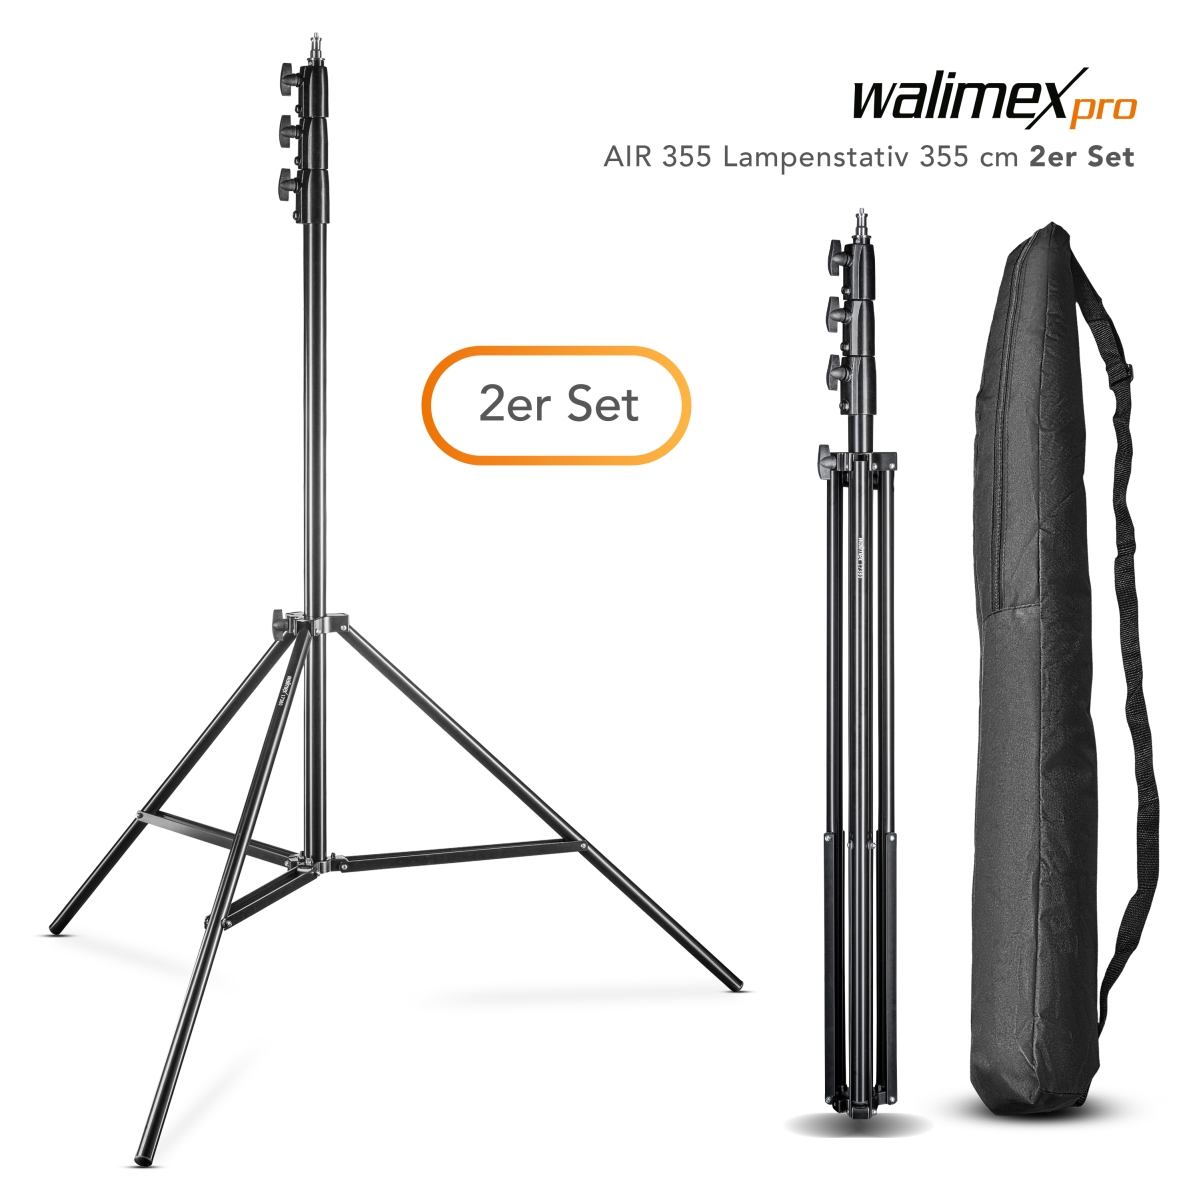 Walimex pro AIR 355 Lampenstativ 355 cm 2er Set